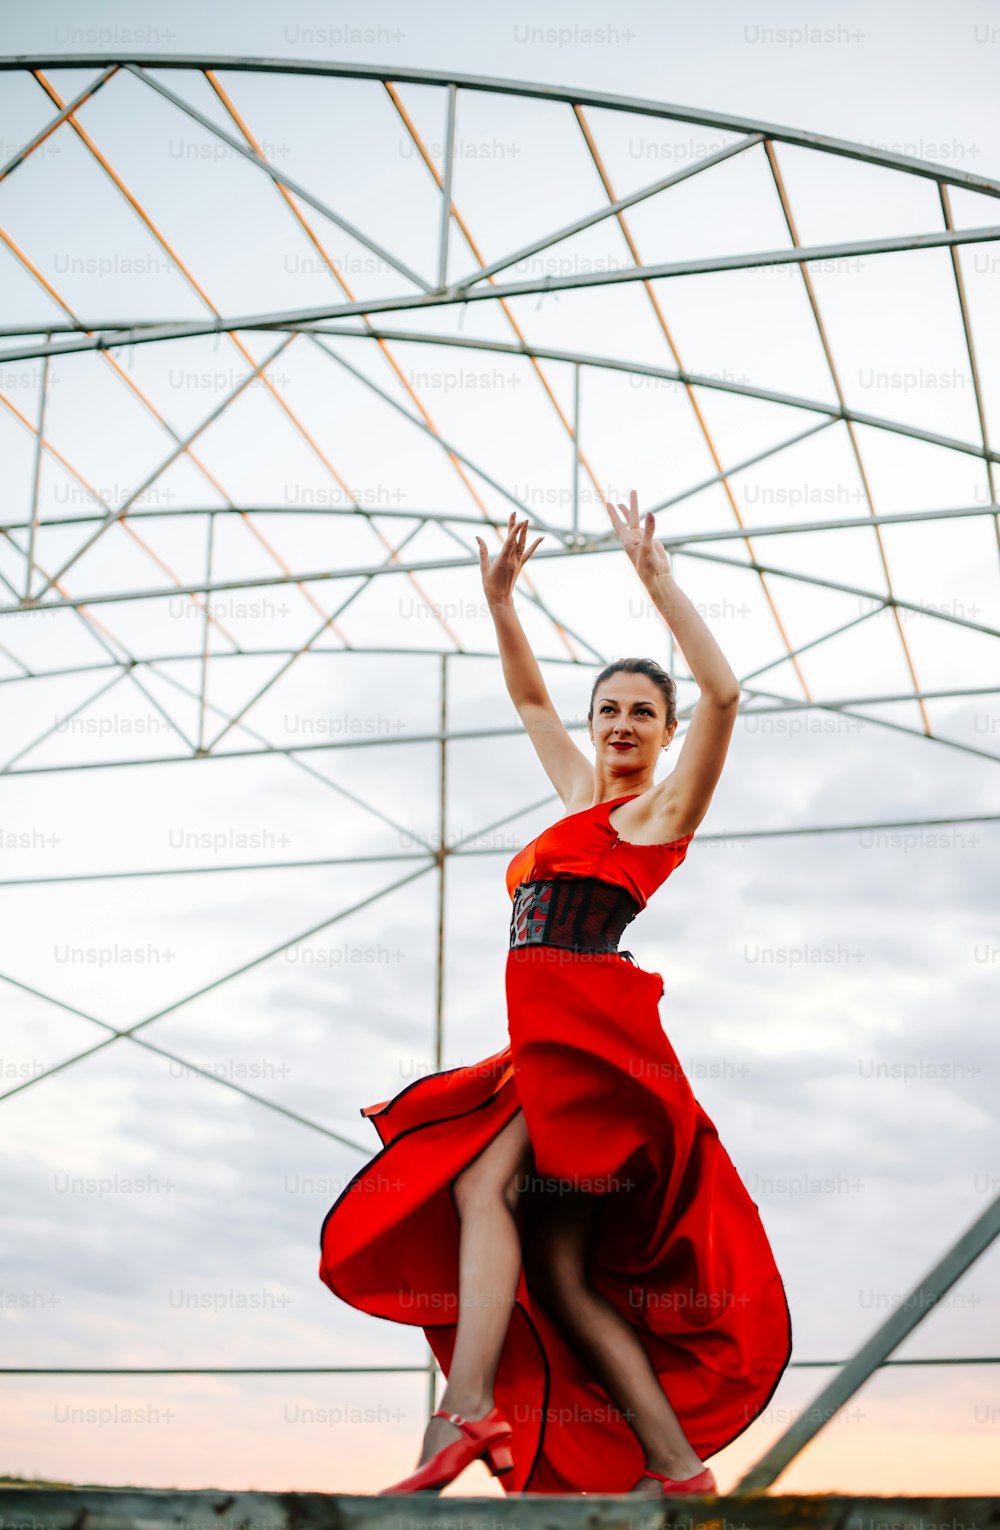 Eine Frau in einem roten Kleid springt in die Luft